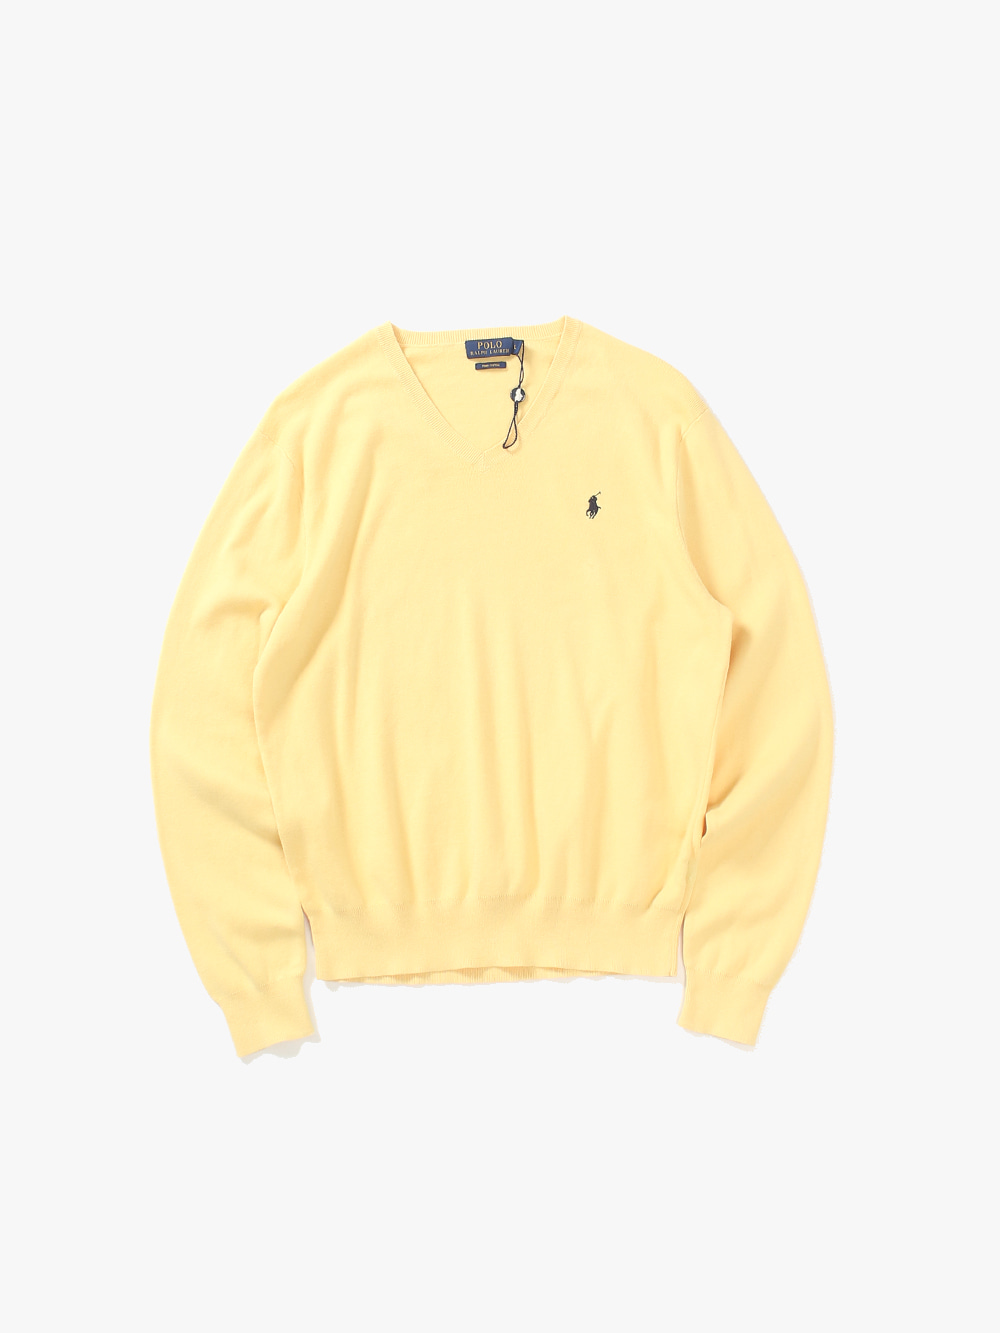 [ L ] Polo Ralph Lauren Sweater (6384)